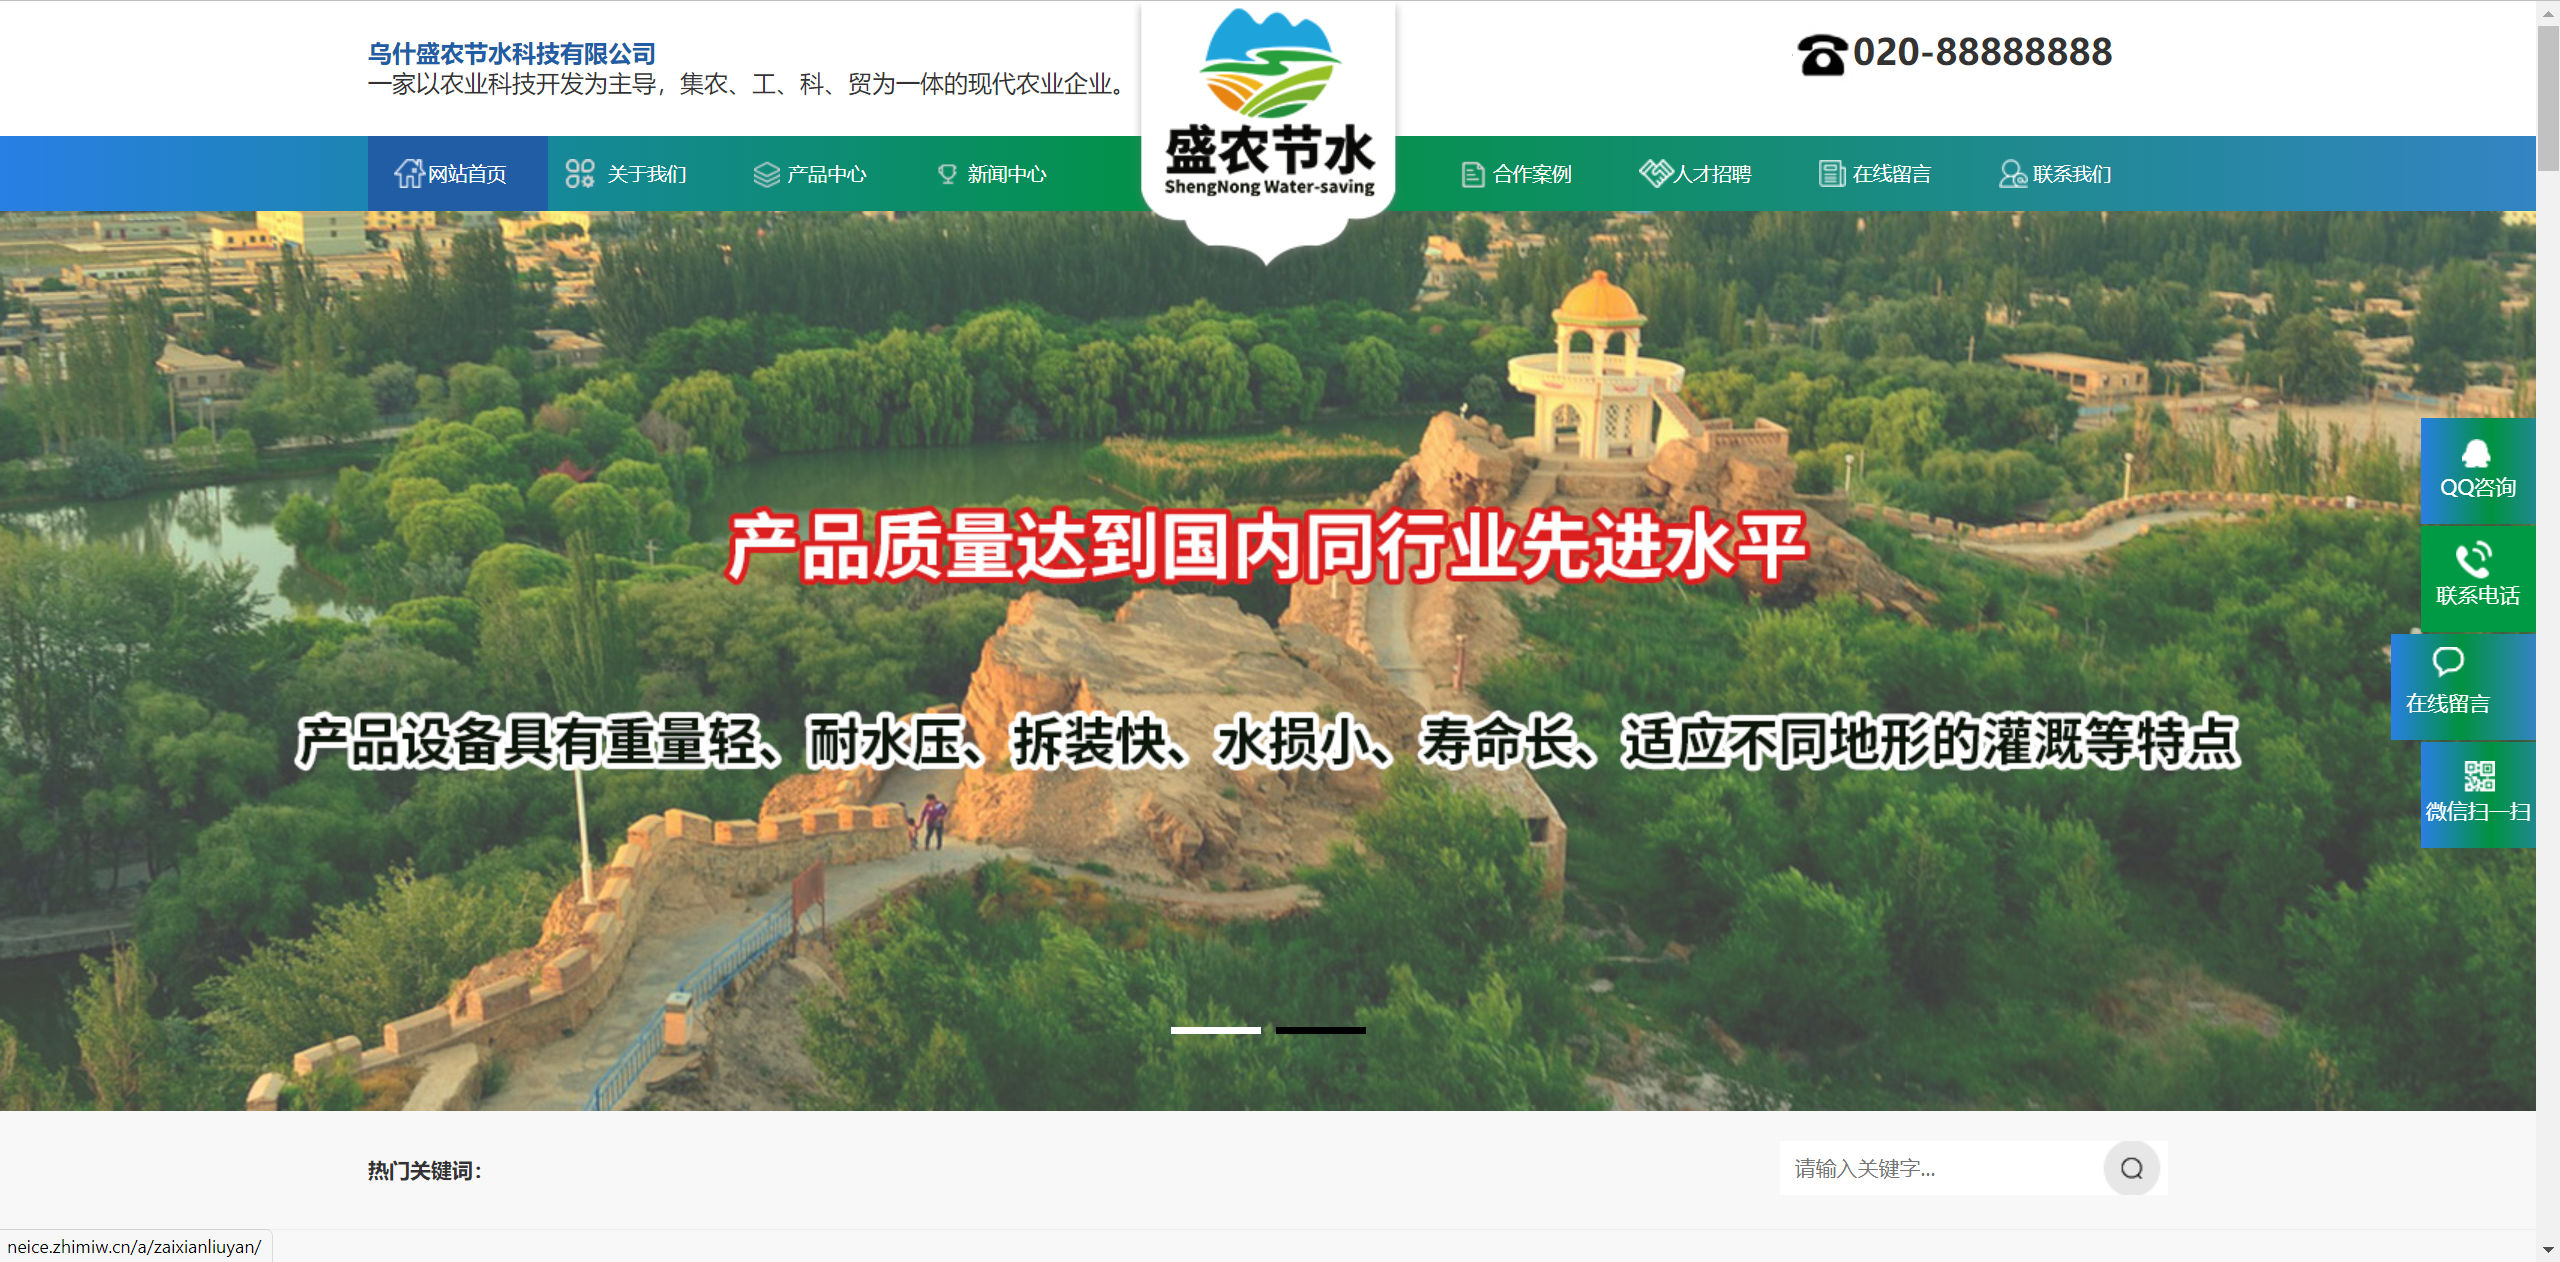 乌什盛农节水科技有限公司企业官网